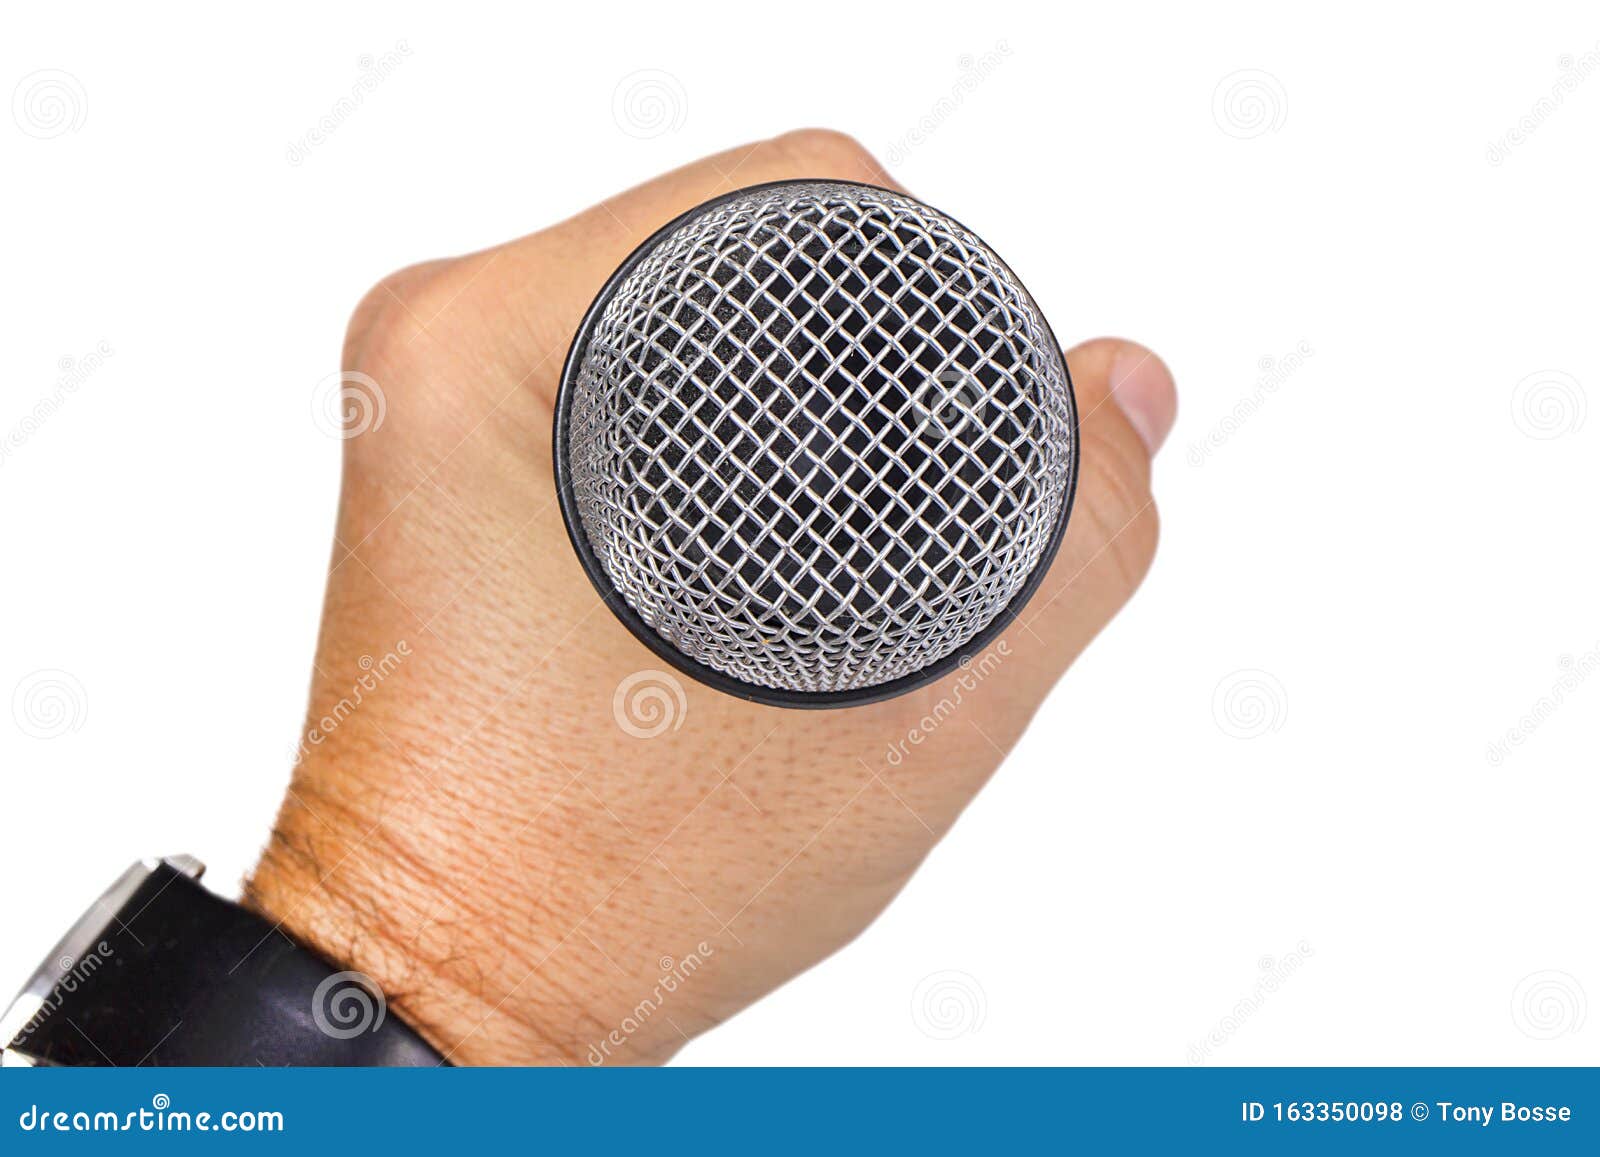 man, speaker, singer, host, entertainer holding microphone